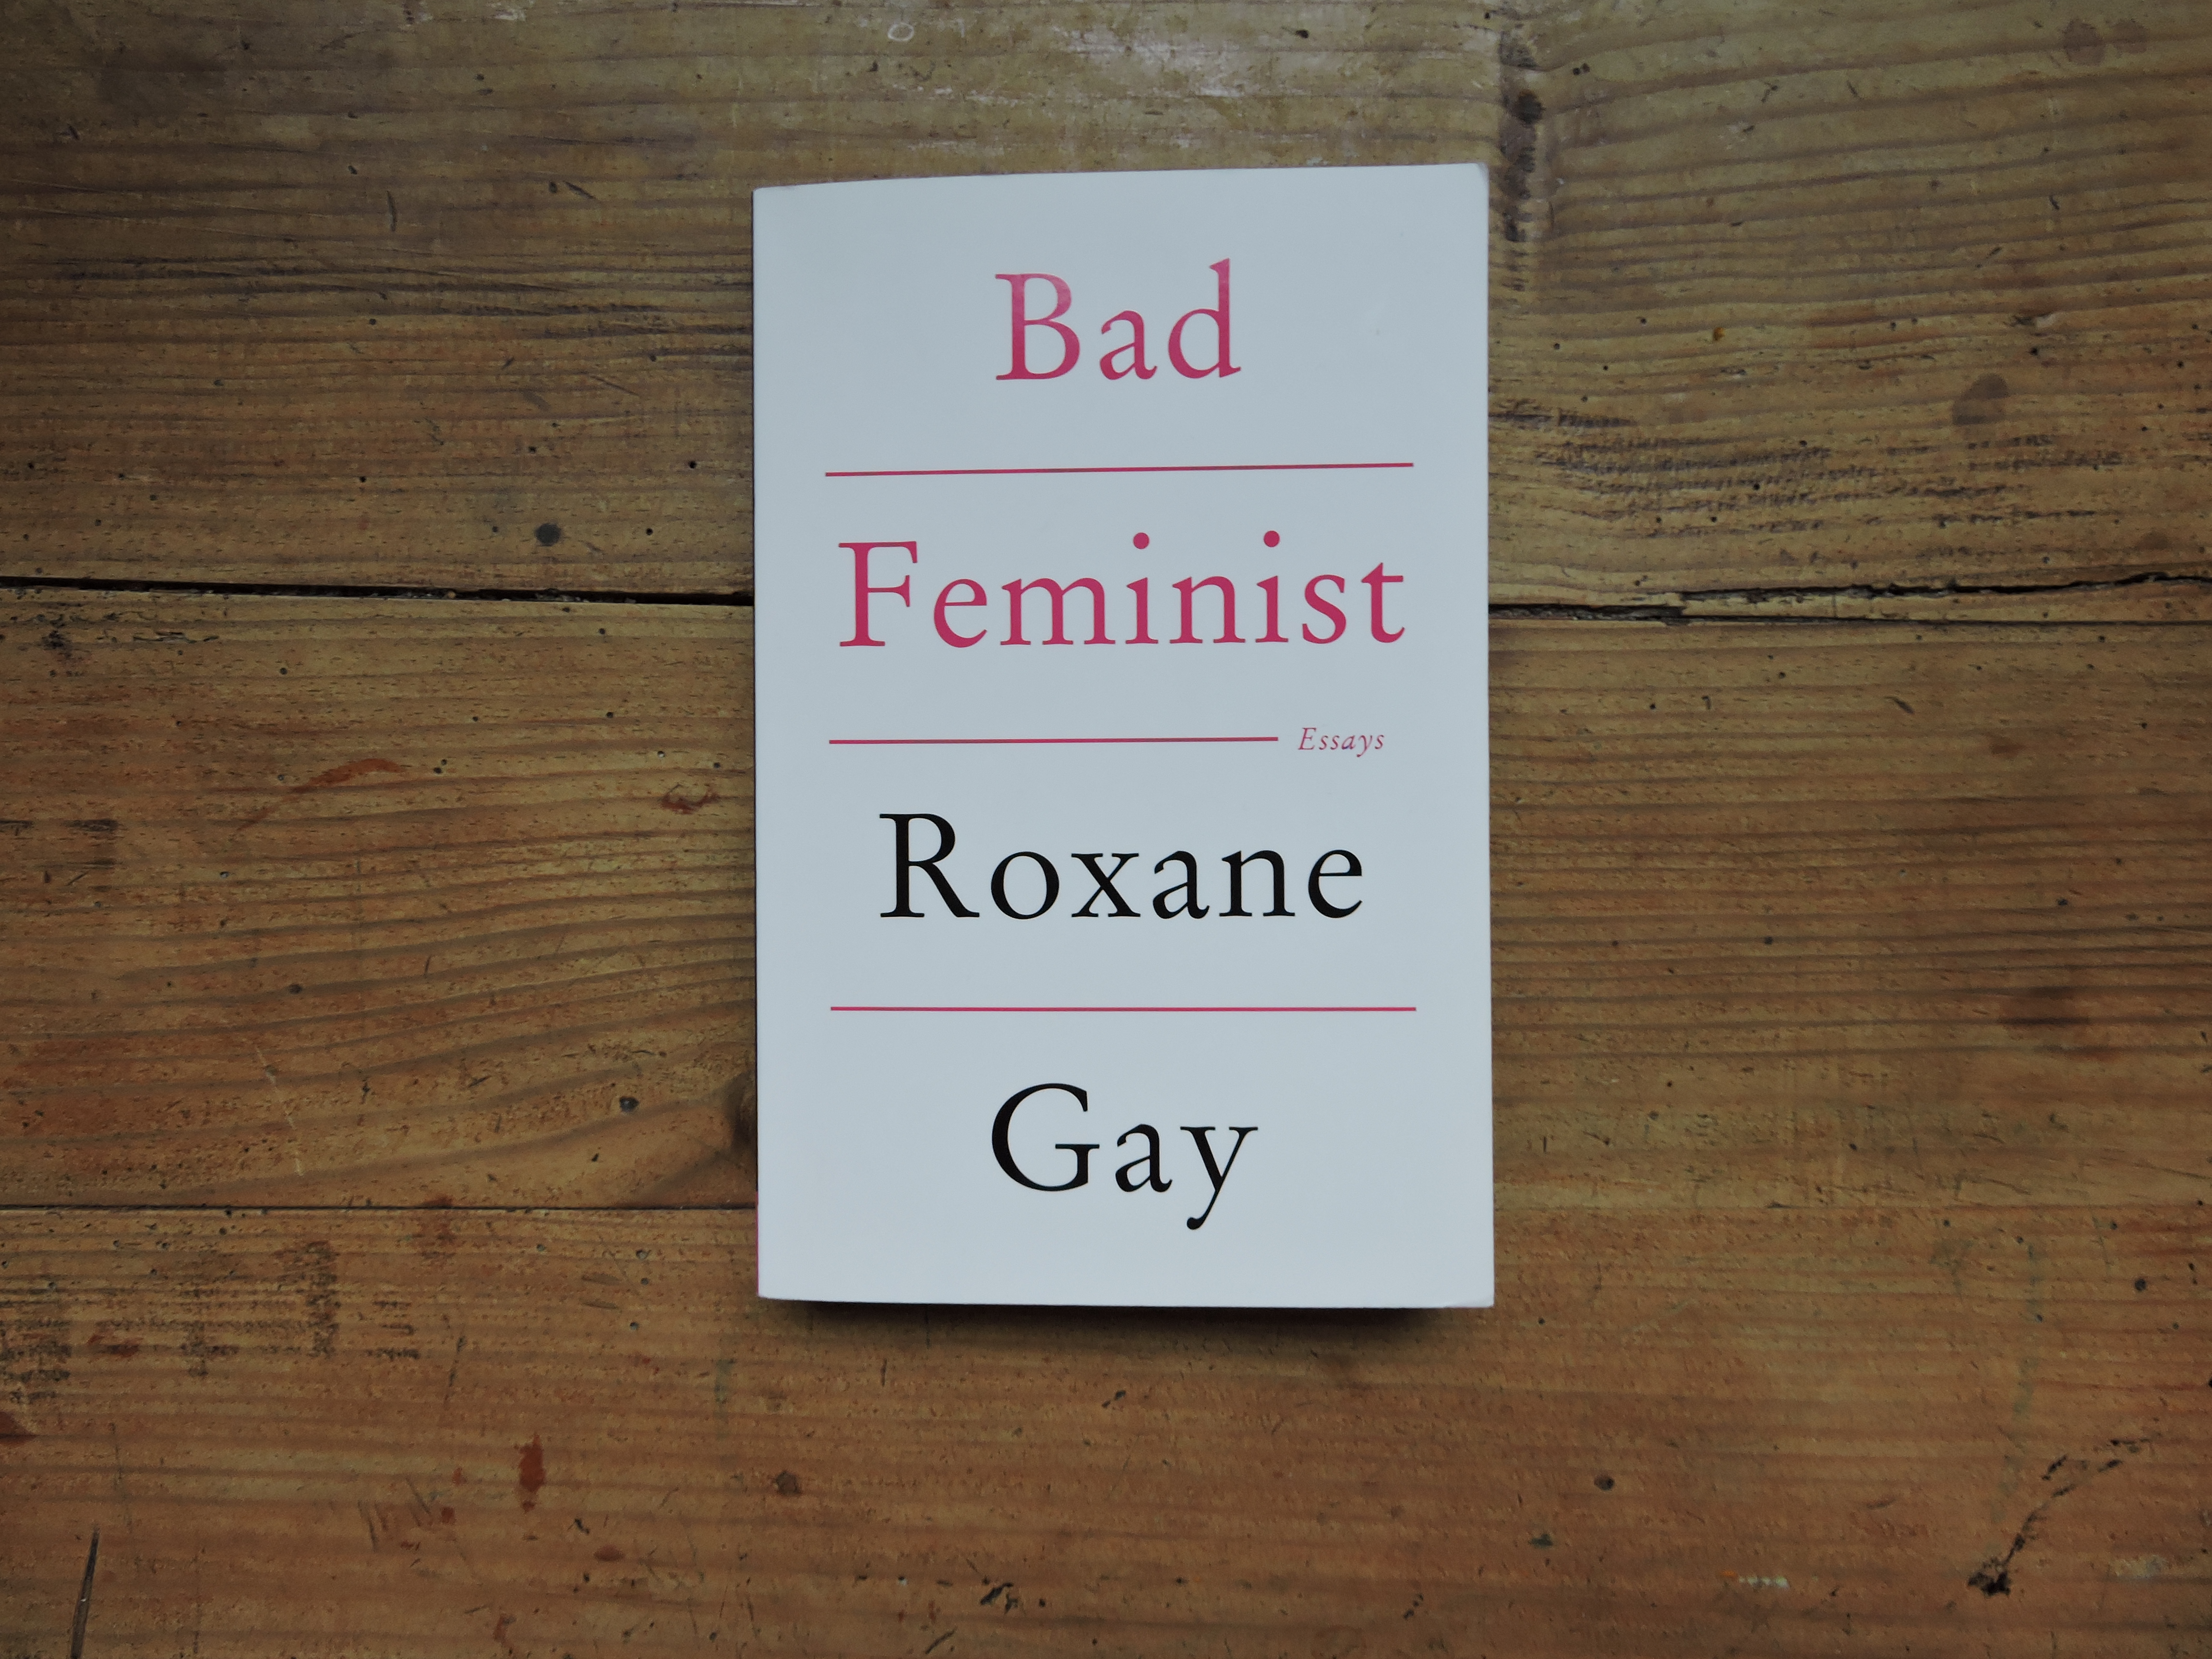 roxane gay books and books